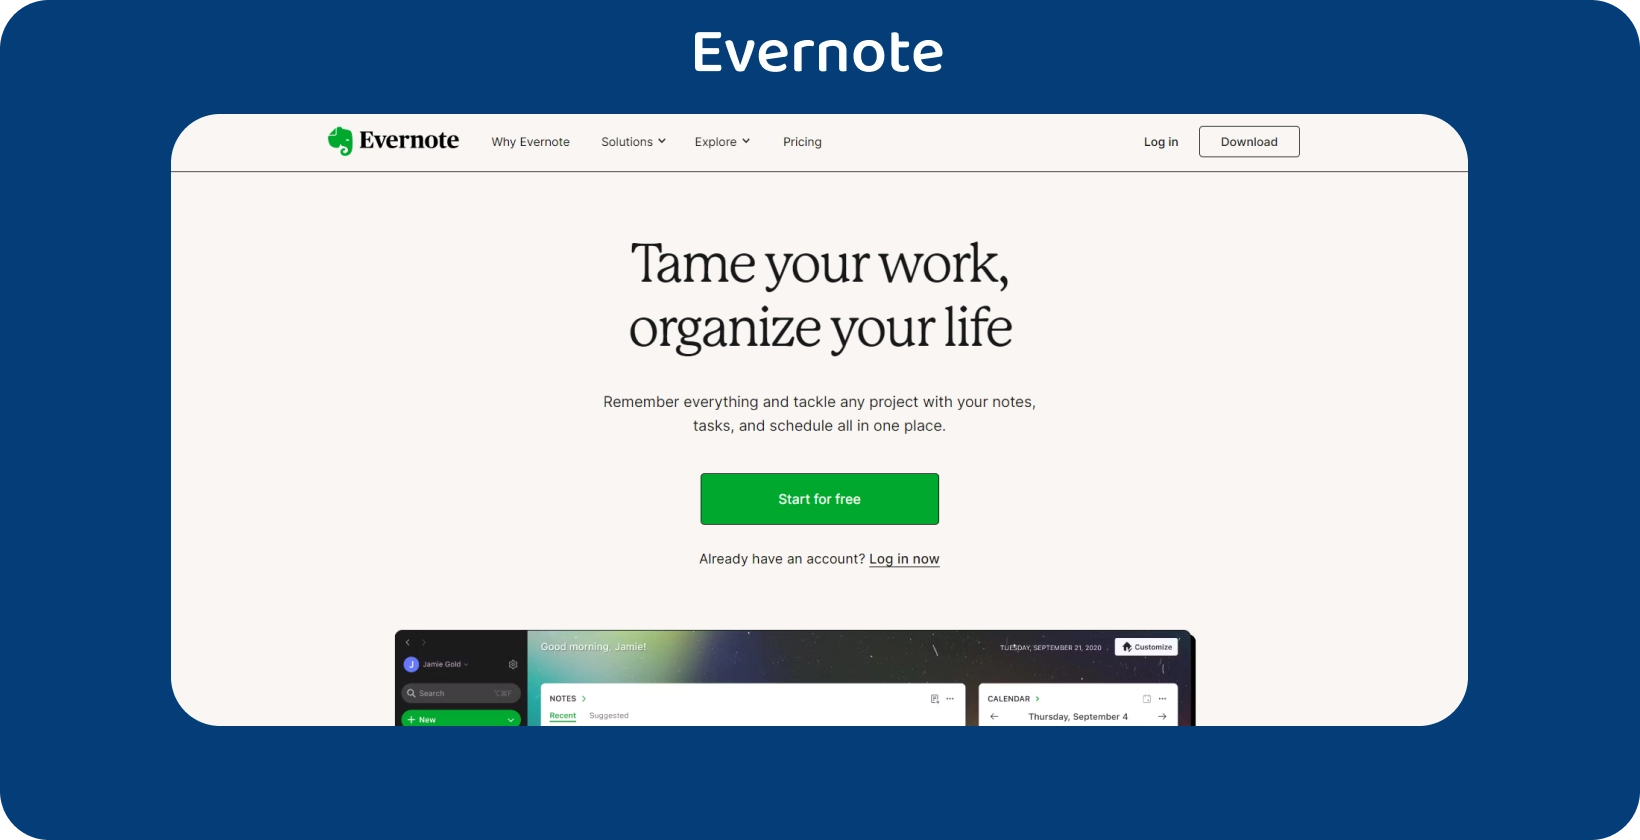 Evernote jegyzetkészítő képernyője teendőlistával, egyszerűsítve a feladatok szervezését.